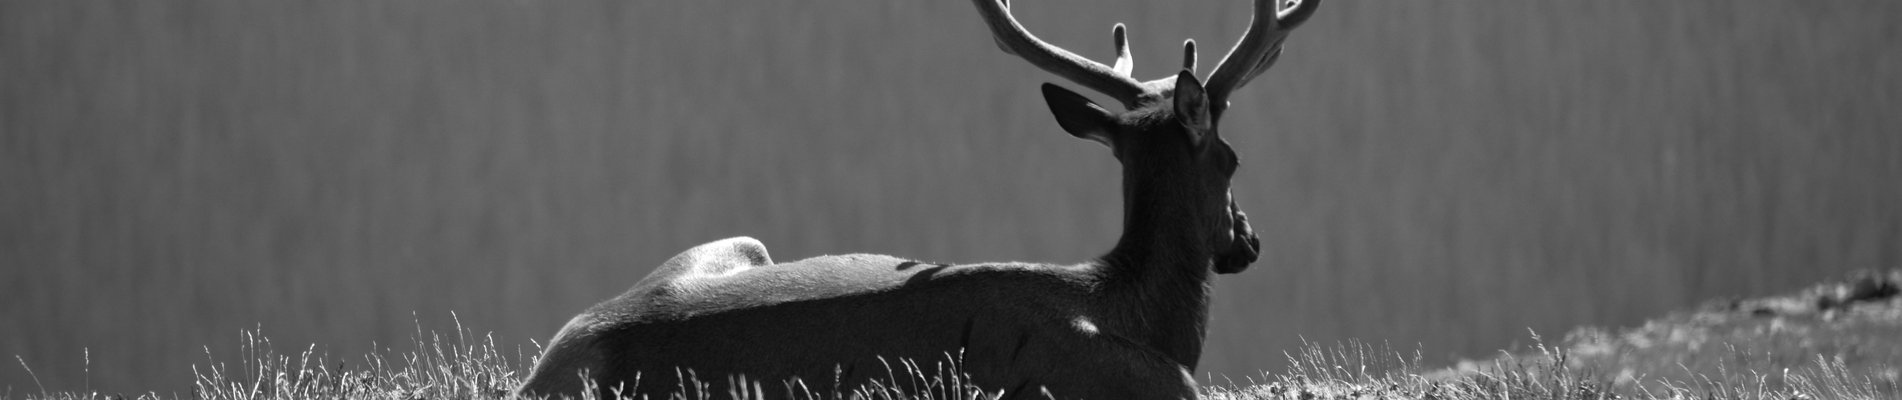 black elk speaks book review